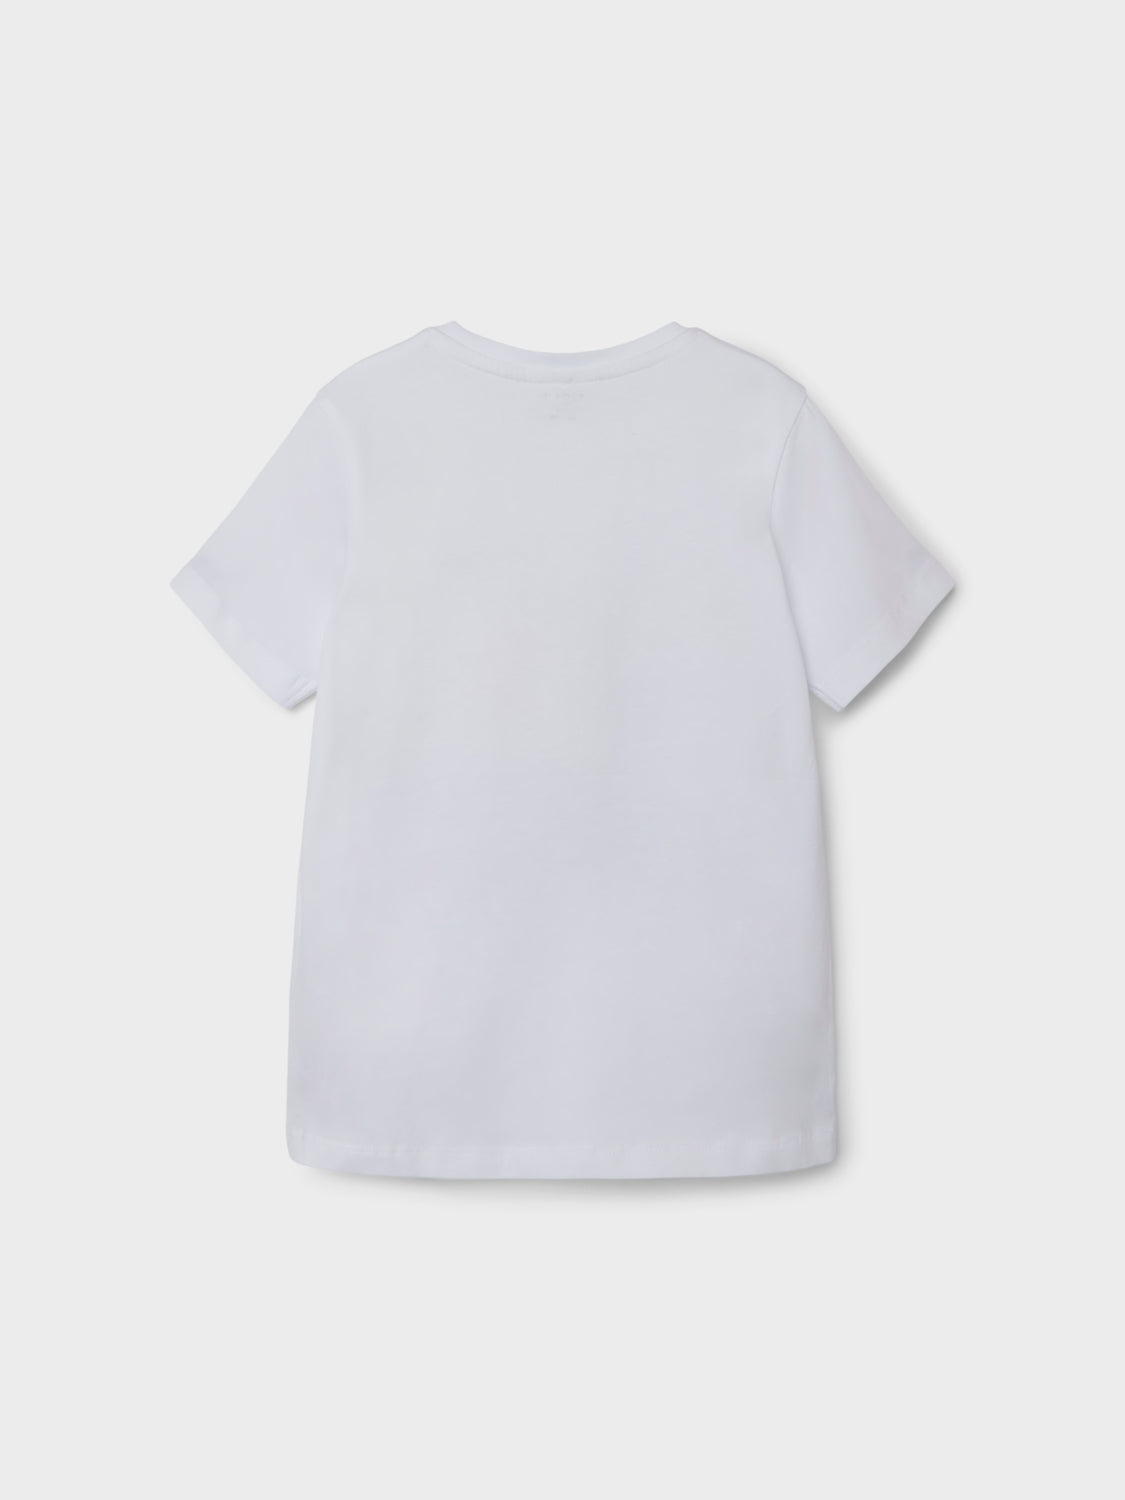 NKMNIKHIL T-shirts & Tops - Bright White